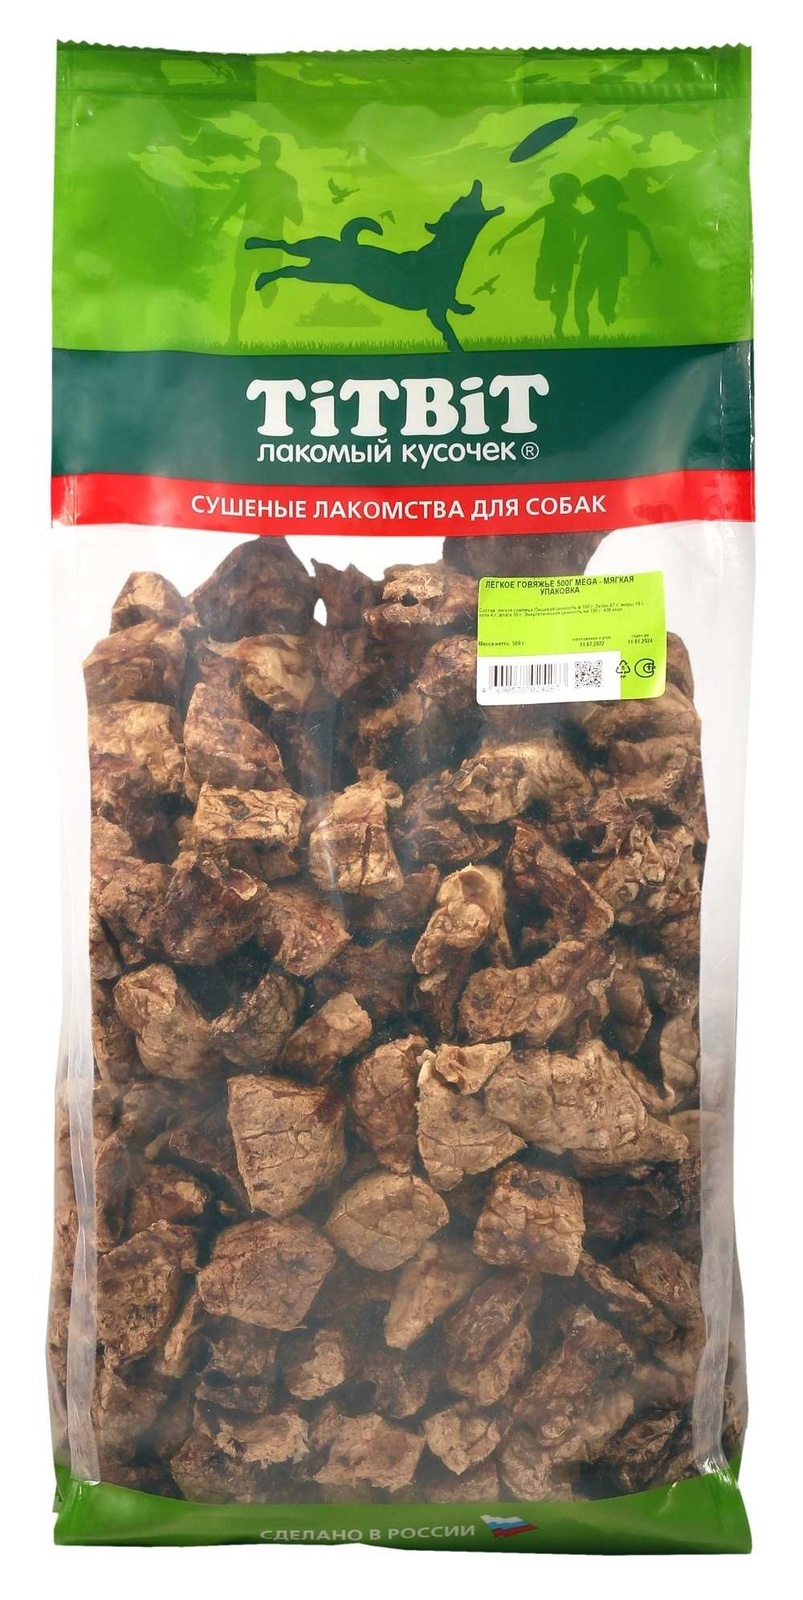 TiTBiT TiTBiT легкое говяжье, мягкая упаковка (500 г) titbit титбит легкое говяжье хl мягкая упаковка 1шт